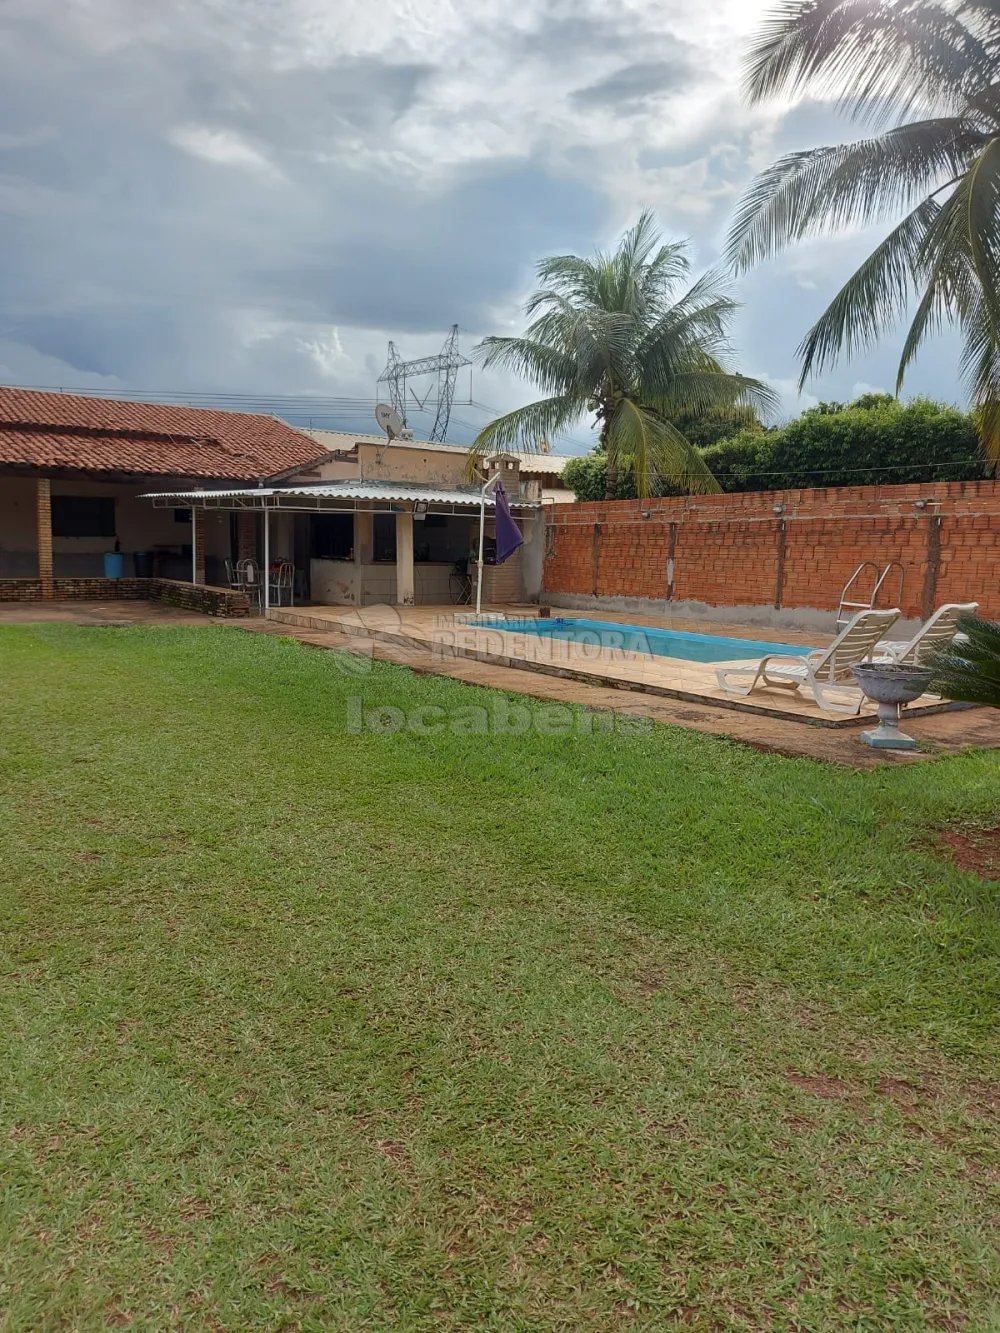 Alugar Casa / Condomínio em São José do Rio Preto apenas R$ 2.500,00 - Foto 2